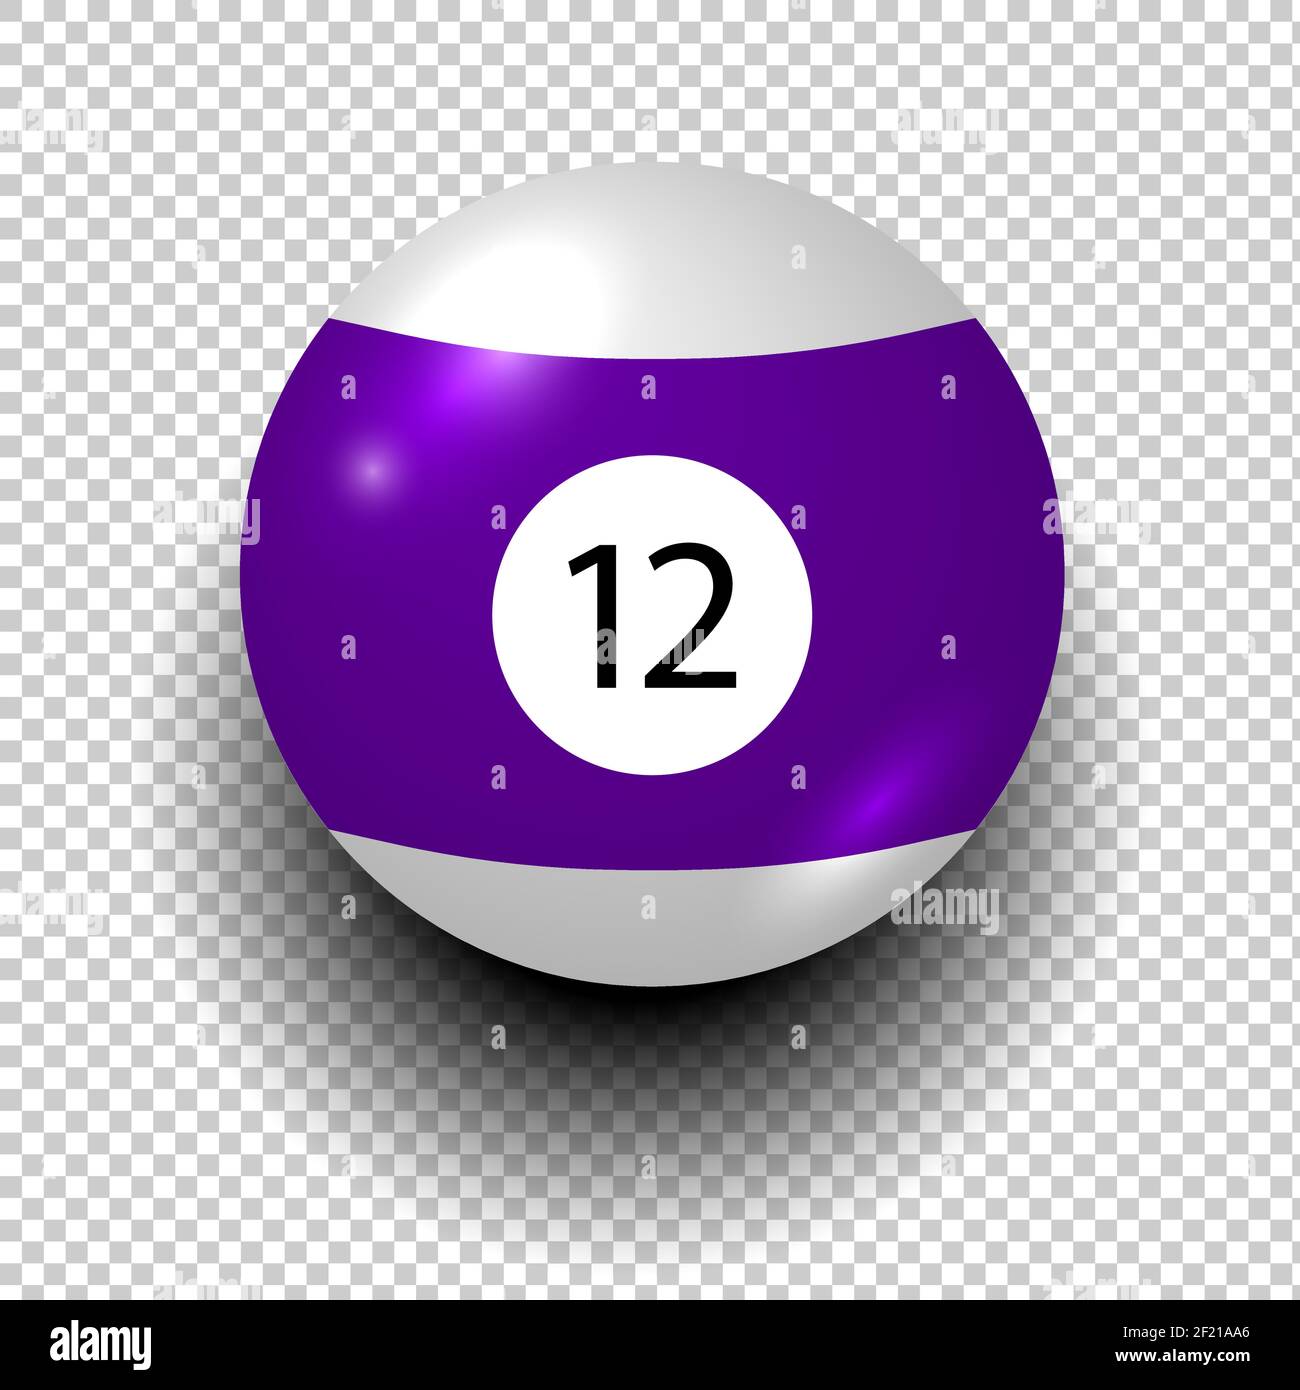 Vettore del pallone da biliardo numero 12. Colore viola e bianco. Oggetto vento isolato su sfondo trasparente. EPS 10 Illustrazione Vettoriale